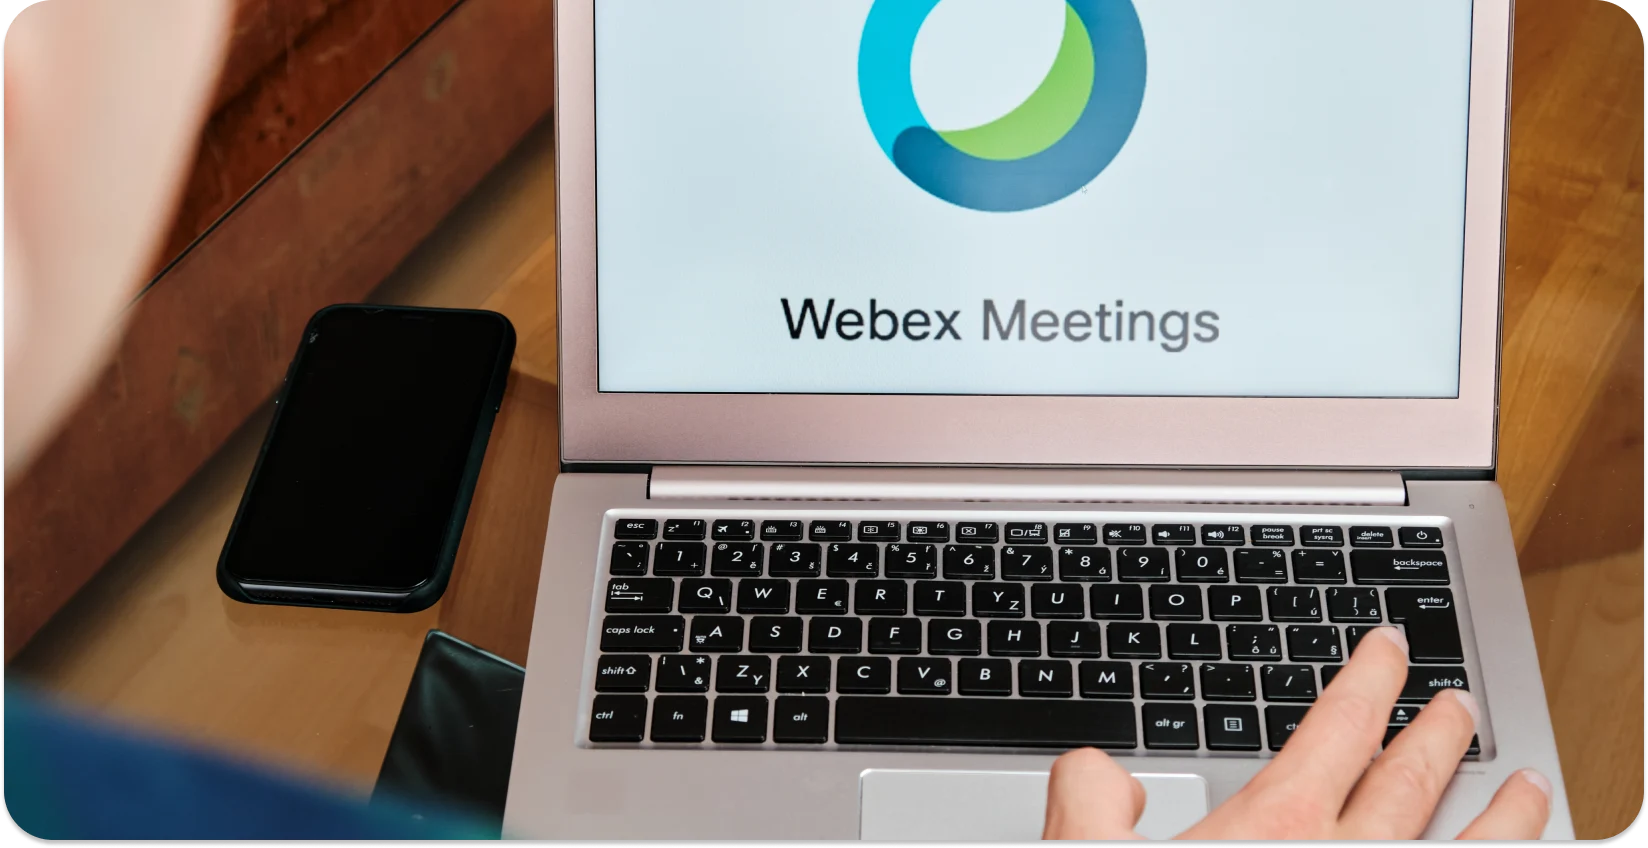 אדם שמתחיל פגישת Webex במחשב נייד, מוכן לתמלול אוטומטי.